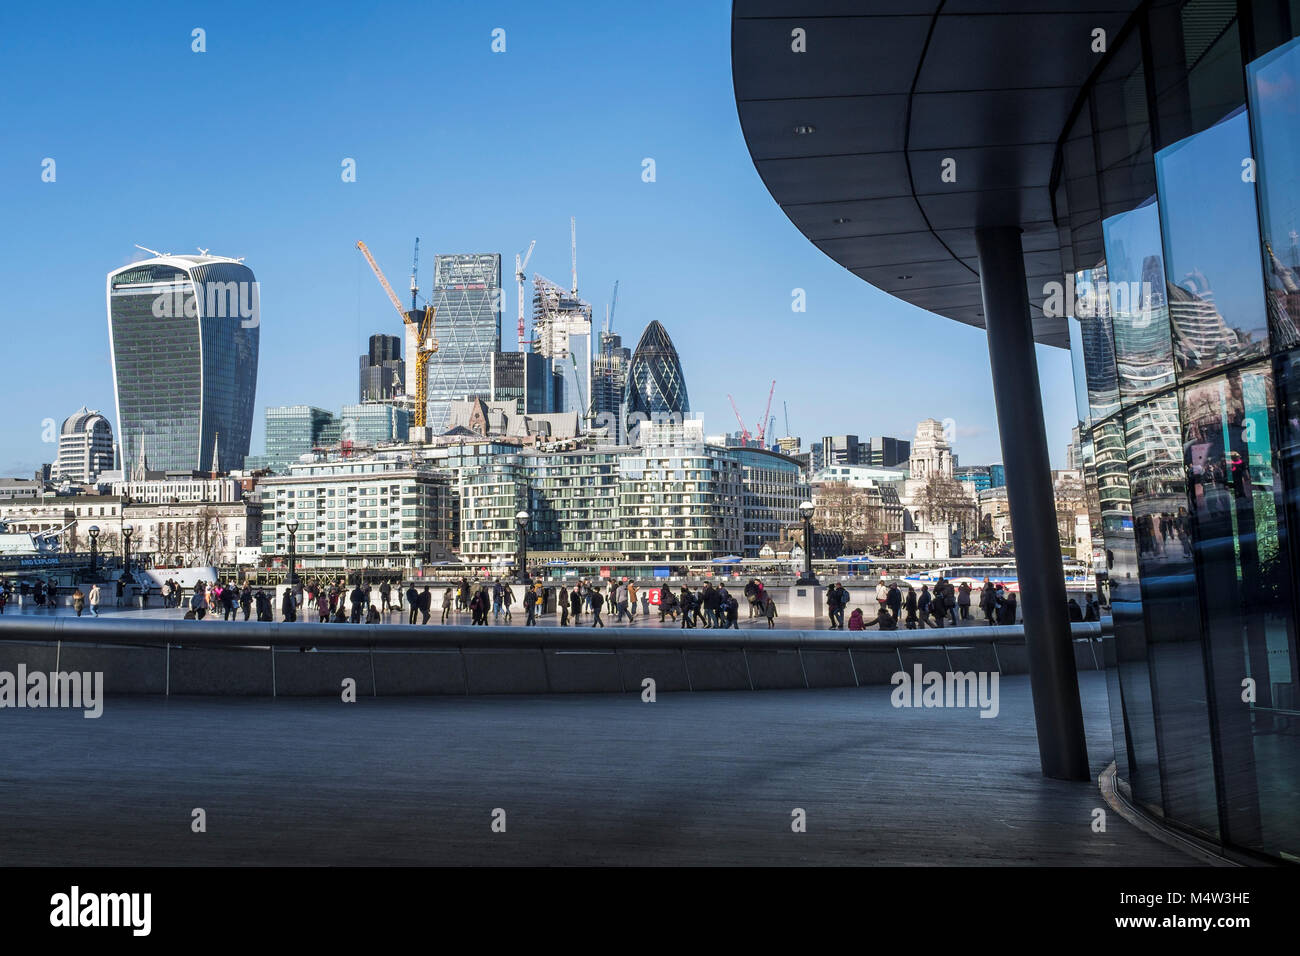 Ville de London Skyline vue de l'Hôtel de Ville, London UK. Février 2018 Banque D'Images